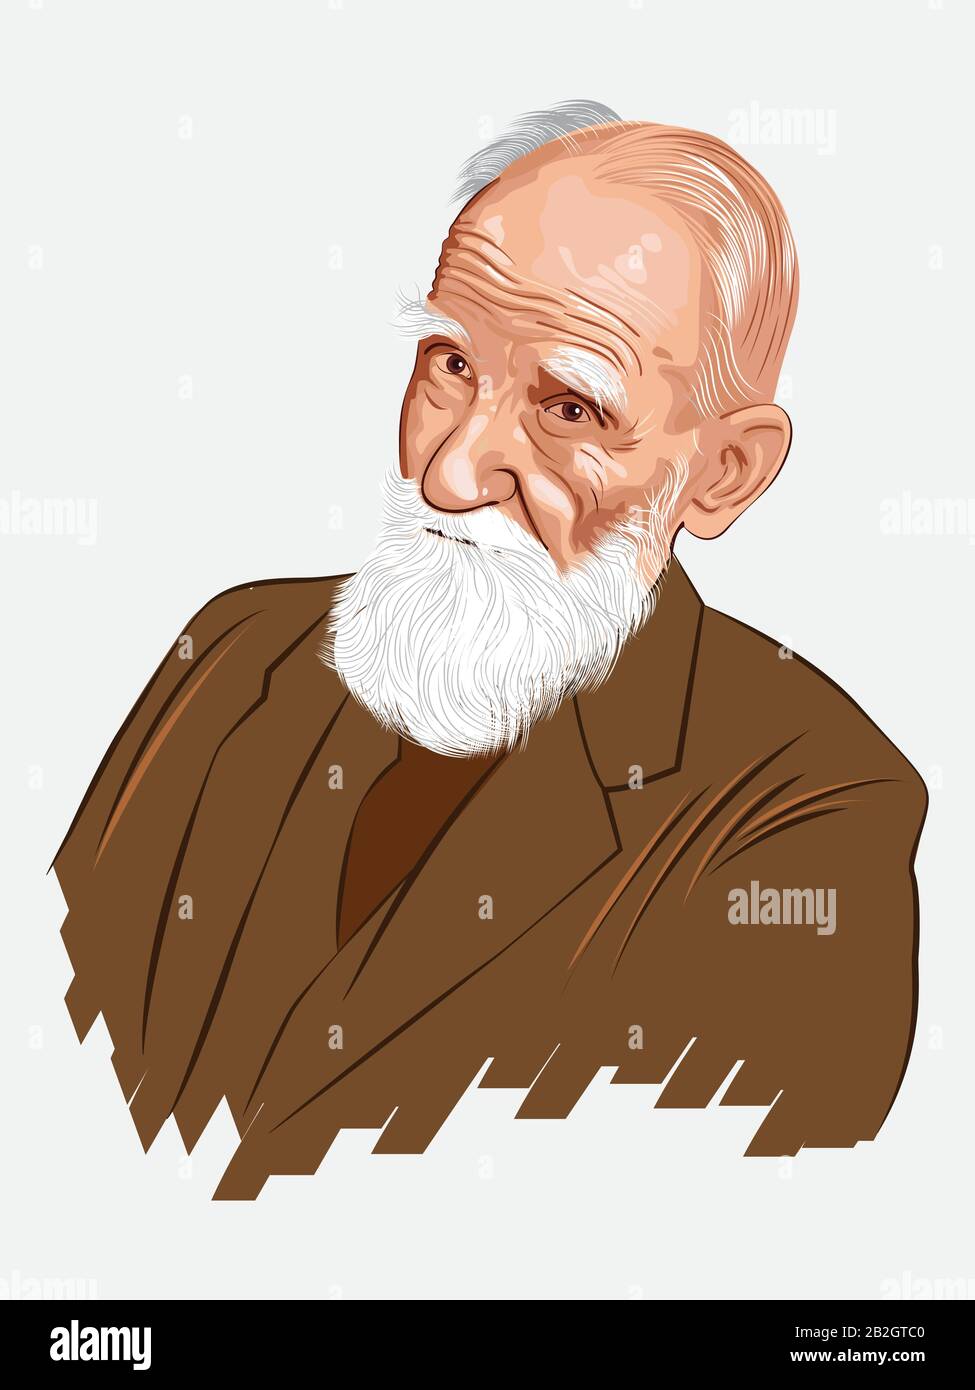 George Bernard Shaw (* 1856; † 1950). Portobello, Dublin, Irland. Irischer Dramatiker, Kritiker, Polemiker und politischer Aktivist. Stock Vektor